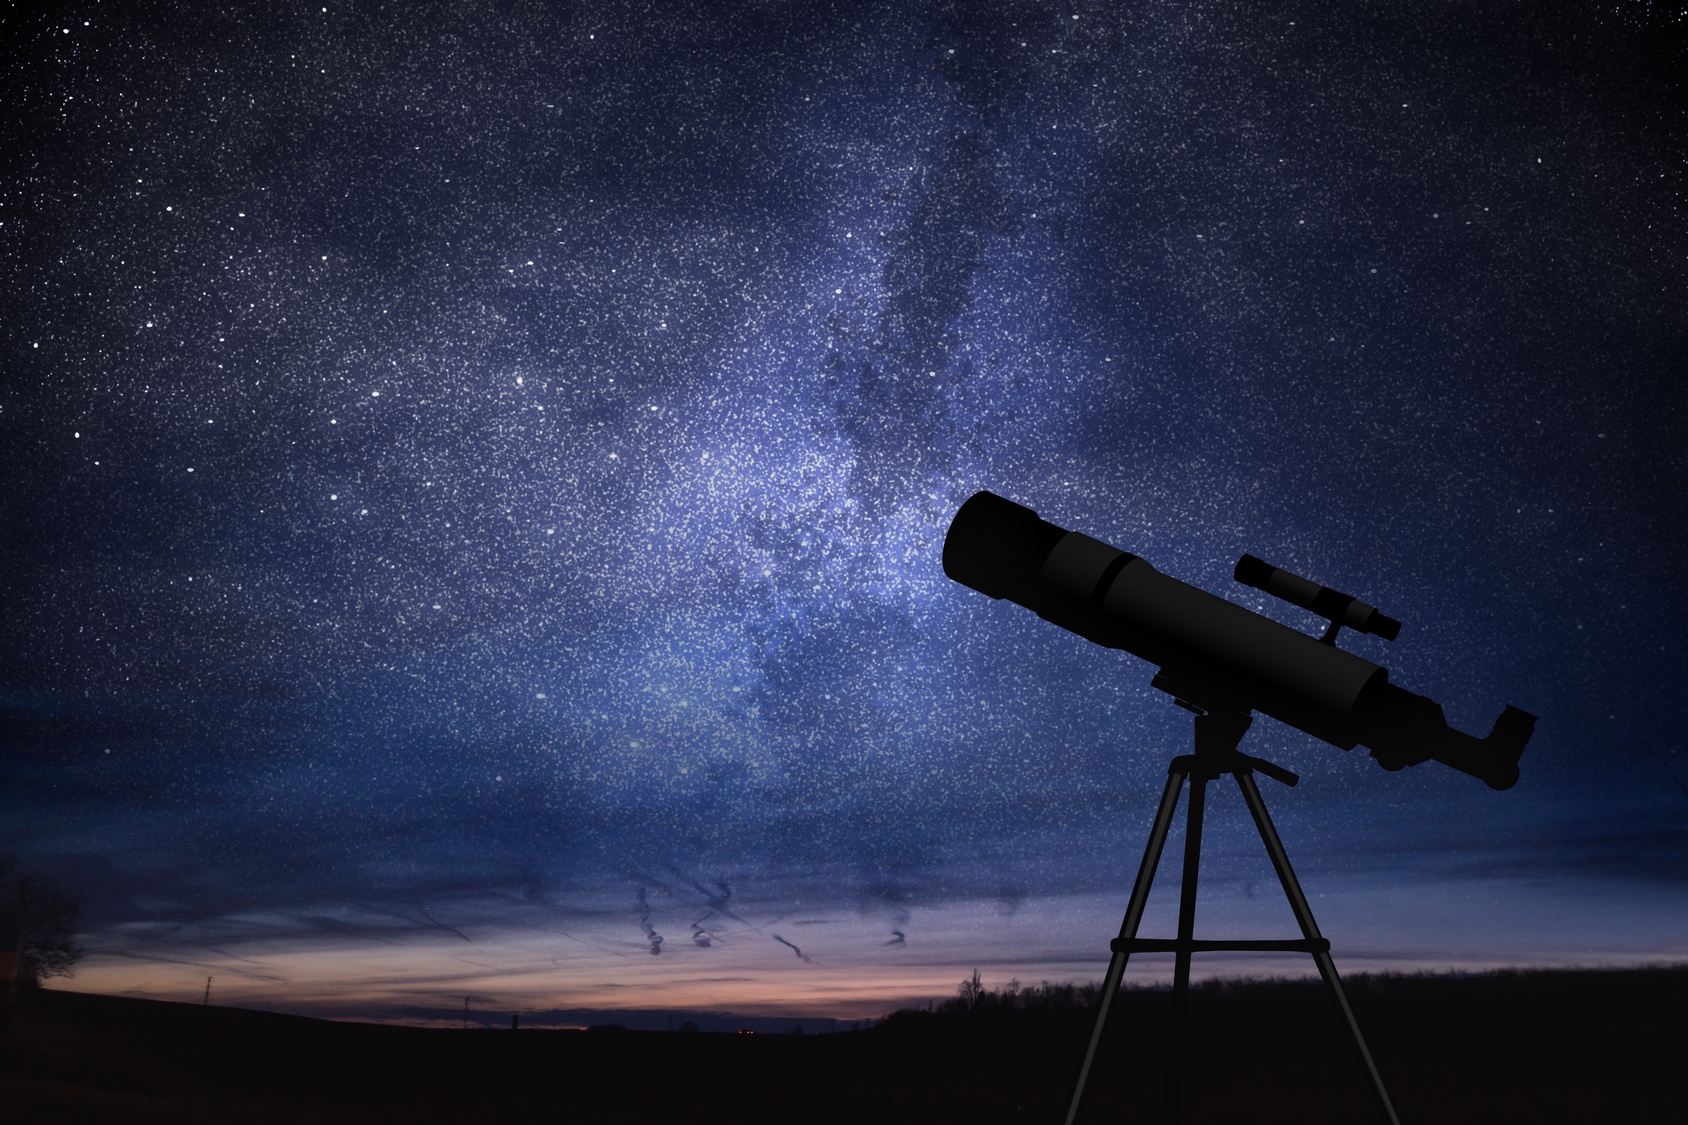 Une lunette astronomique permet d’observer les planètes. © vchalup, Fotolia